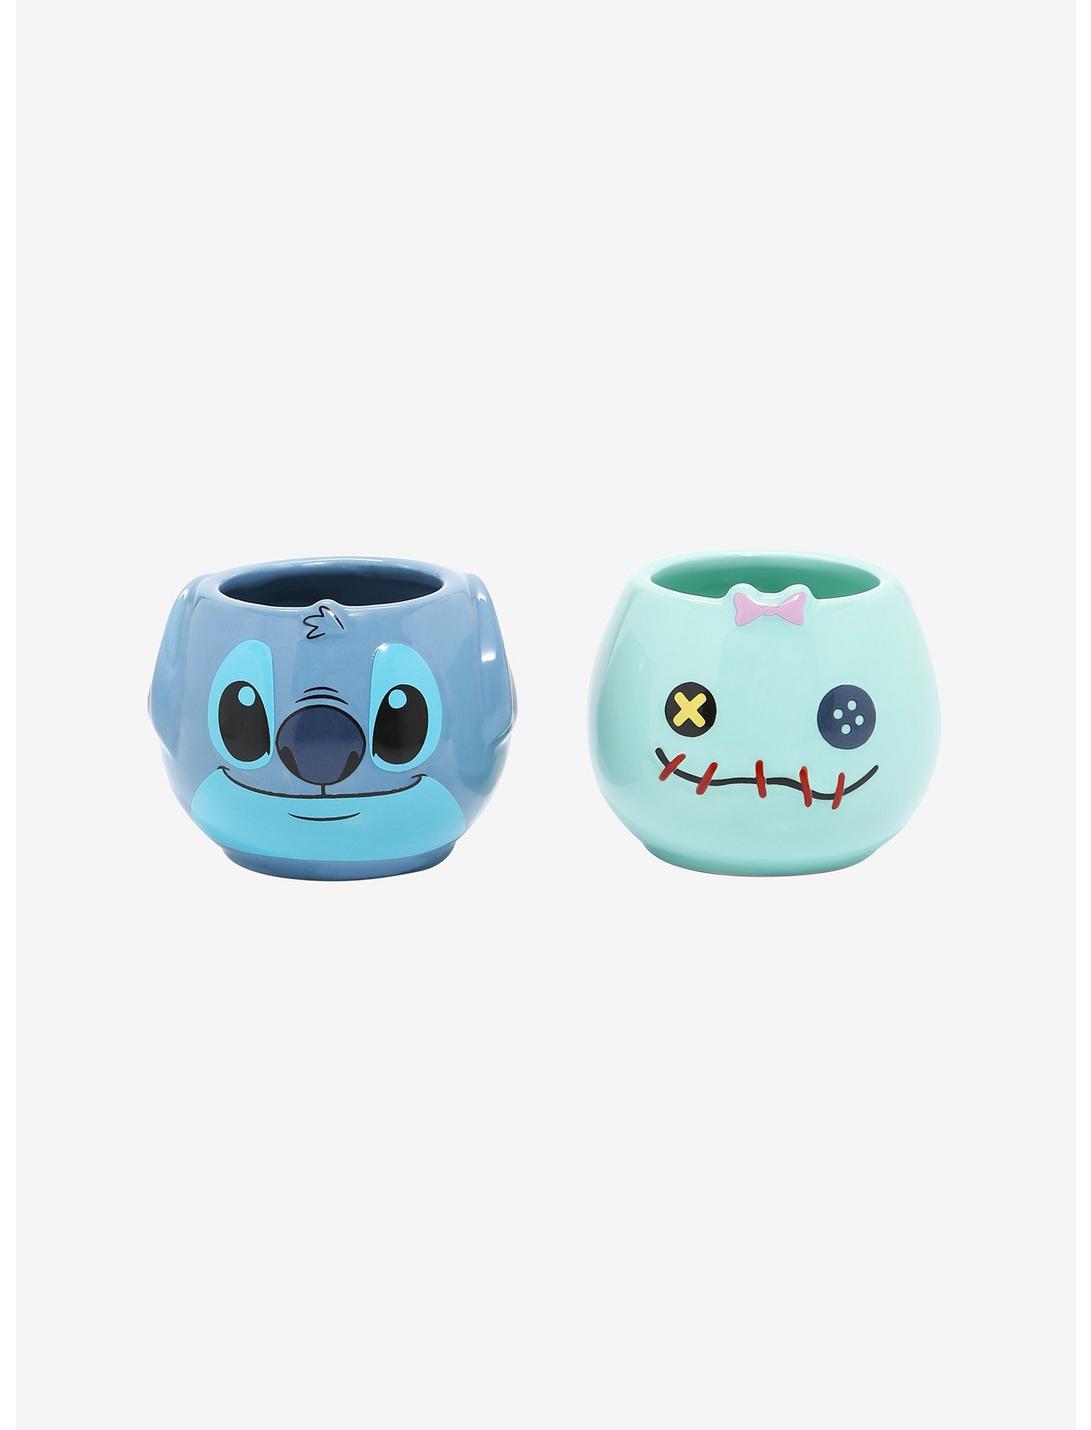 Disney Lilo & Stitch Scrump & Stitch Mini Cup Set - BoxLunch Exclusive, , hi-res